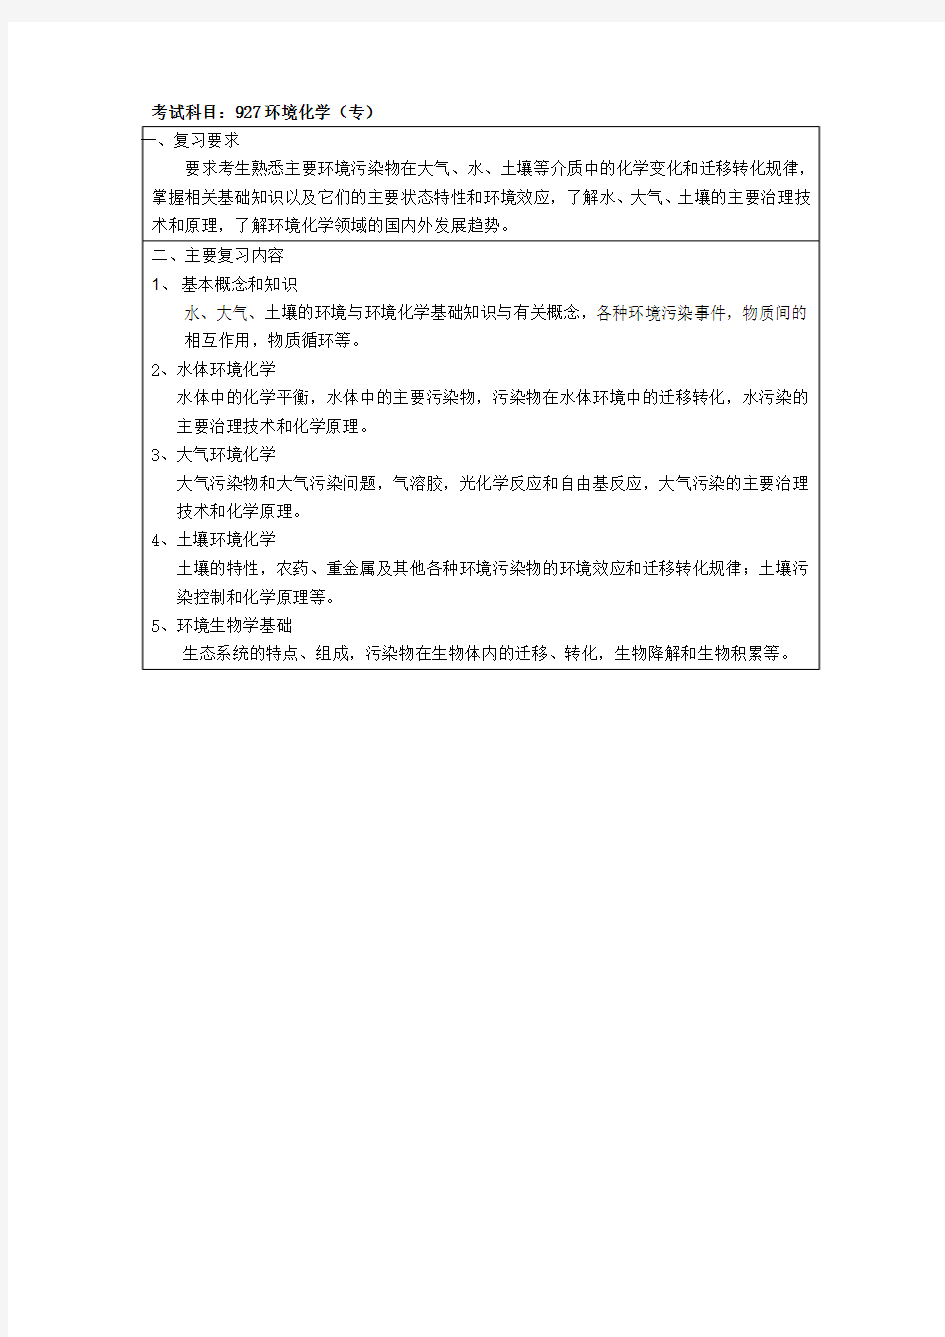 2017年上海大学 927环境化学(专)  考试大纲(初试)